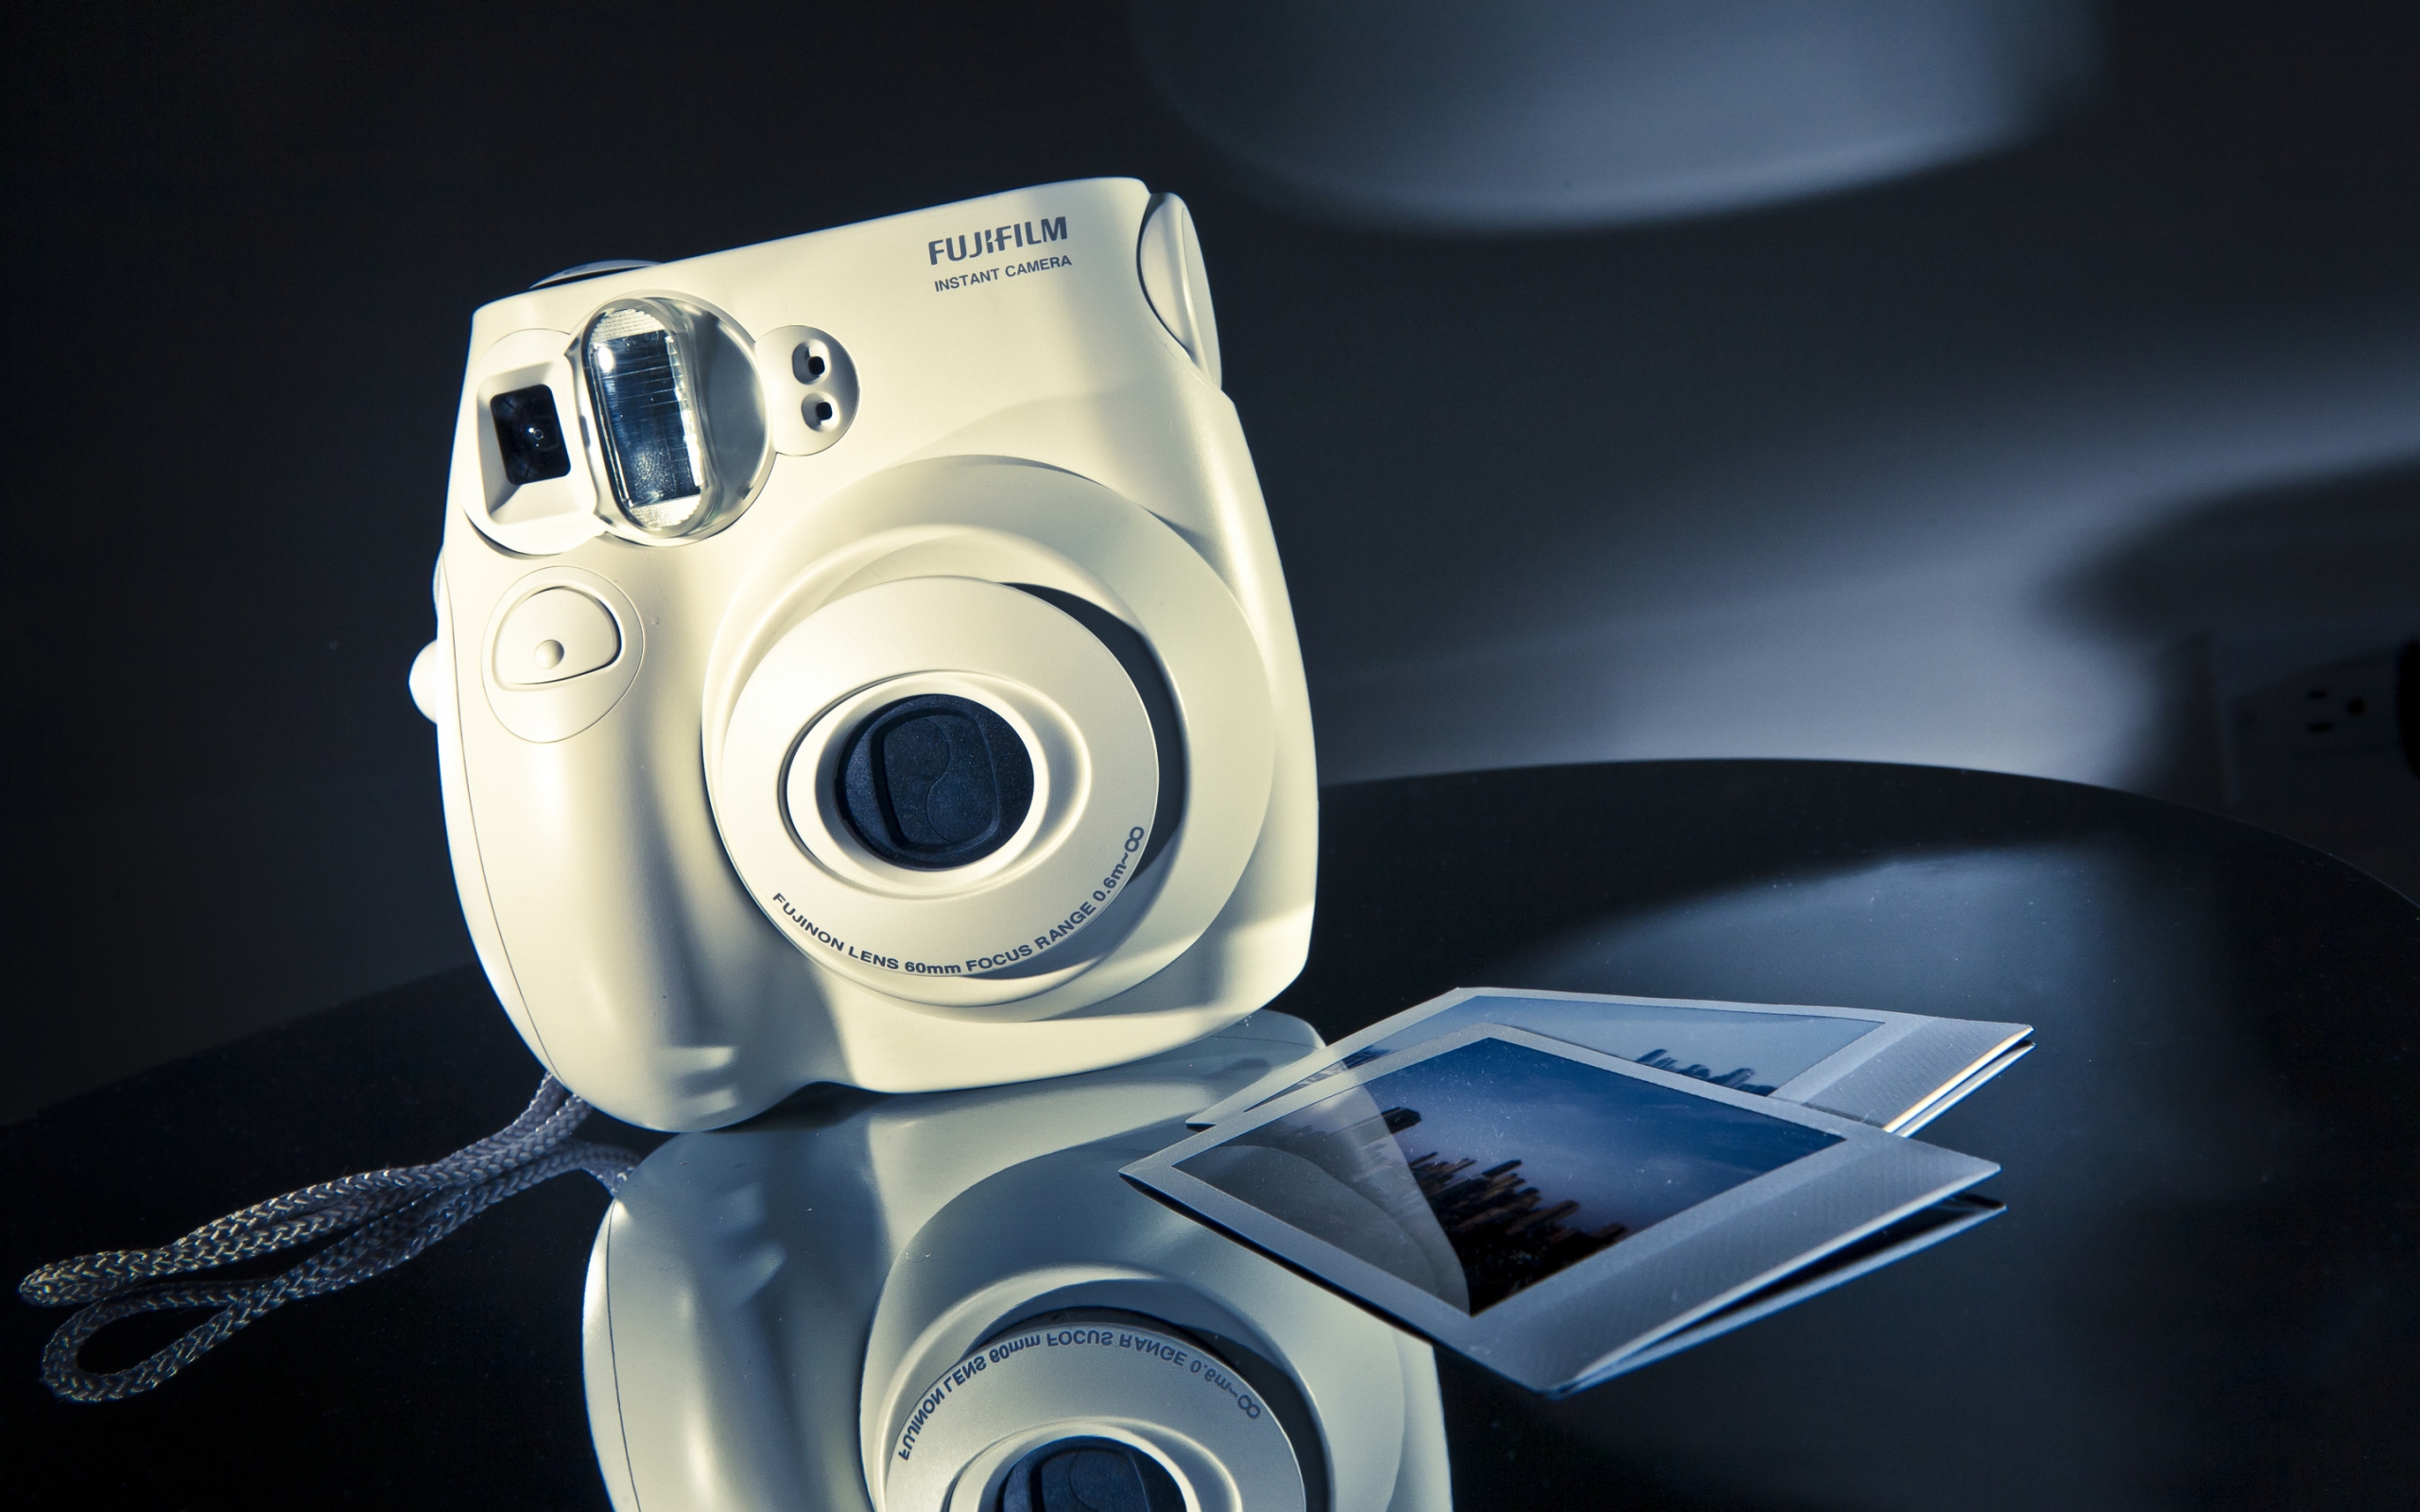 Fujifilm Instax Mini Camera for 2560 x 1600 widescreen resolution